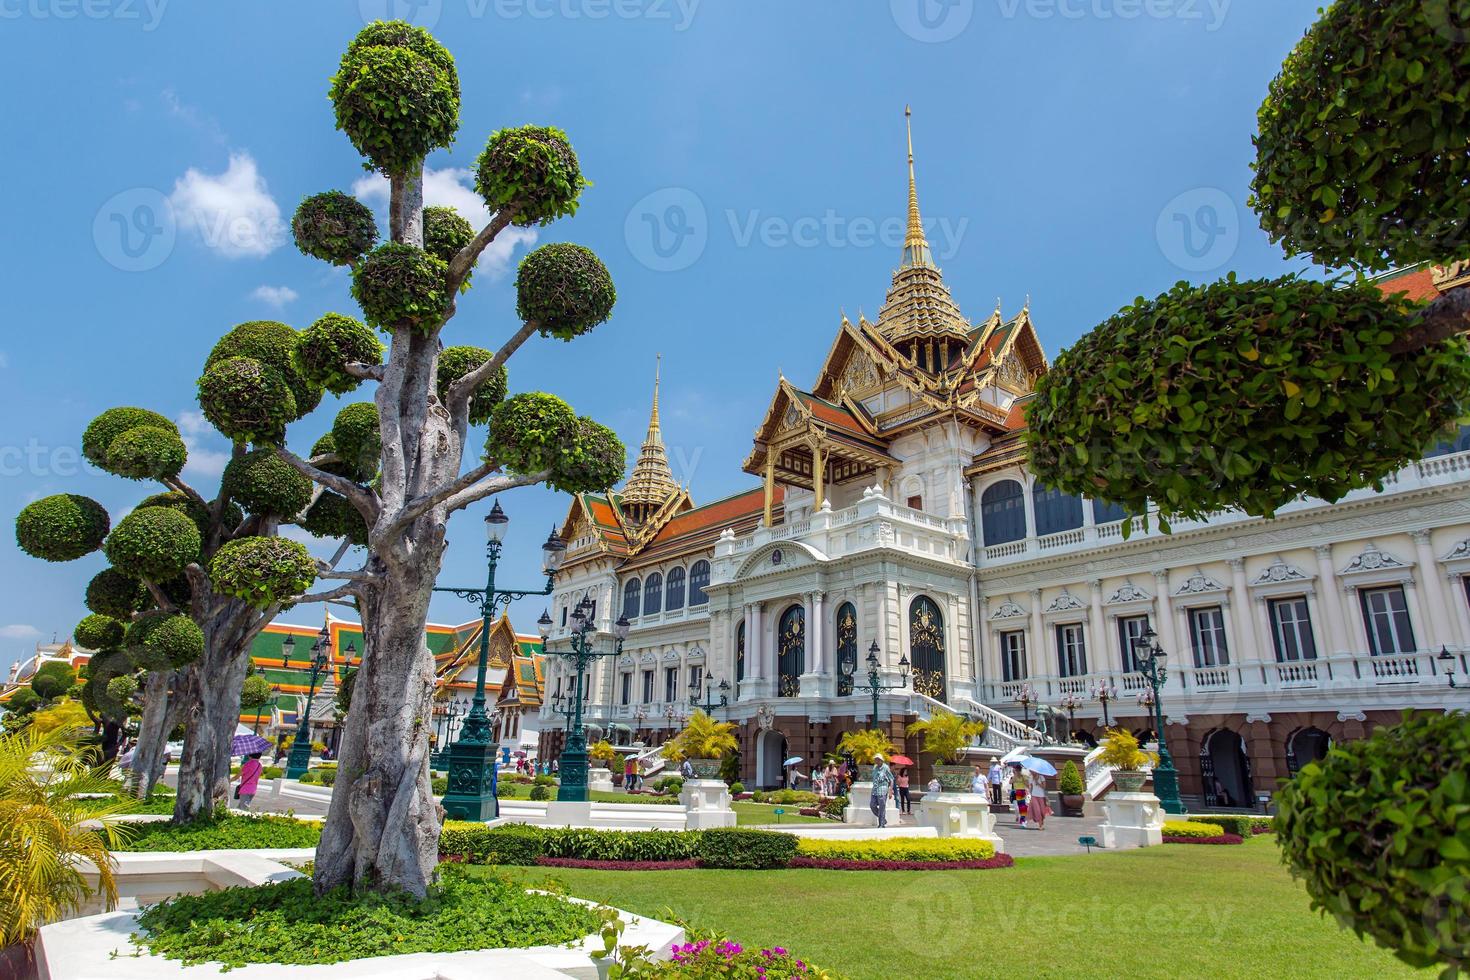 Grand Palace in Bangkok, Thailand photo